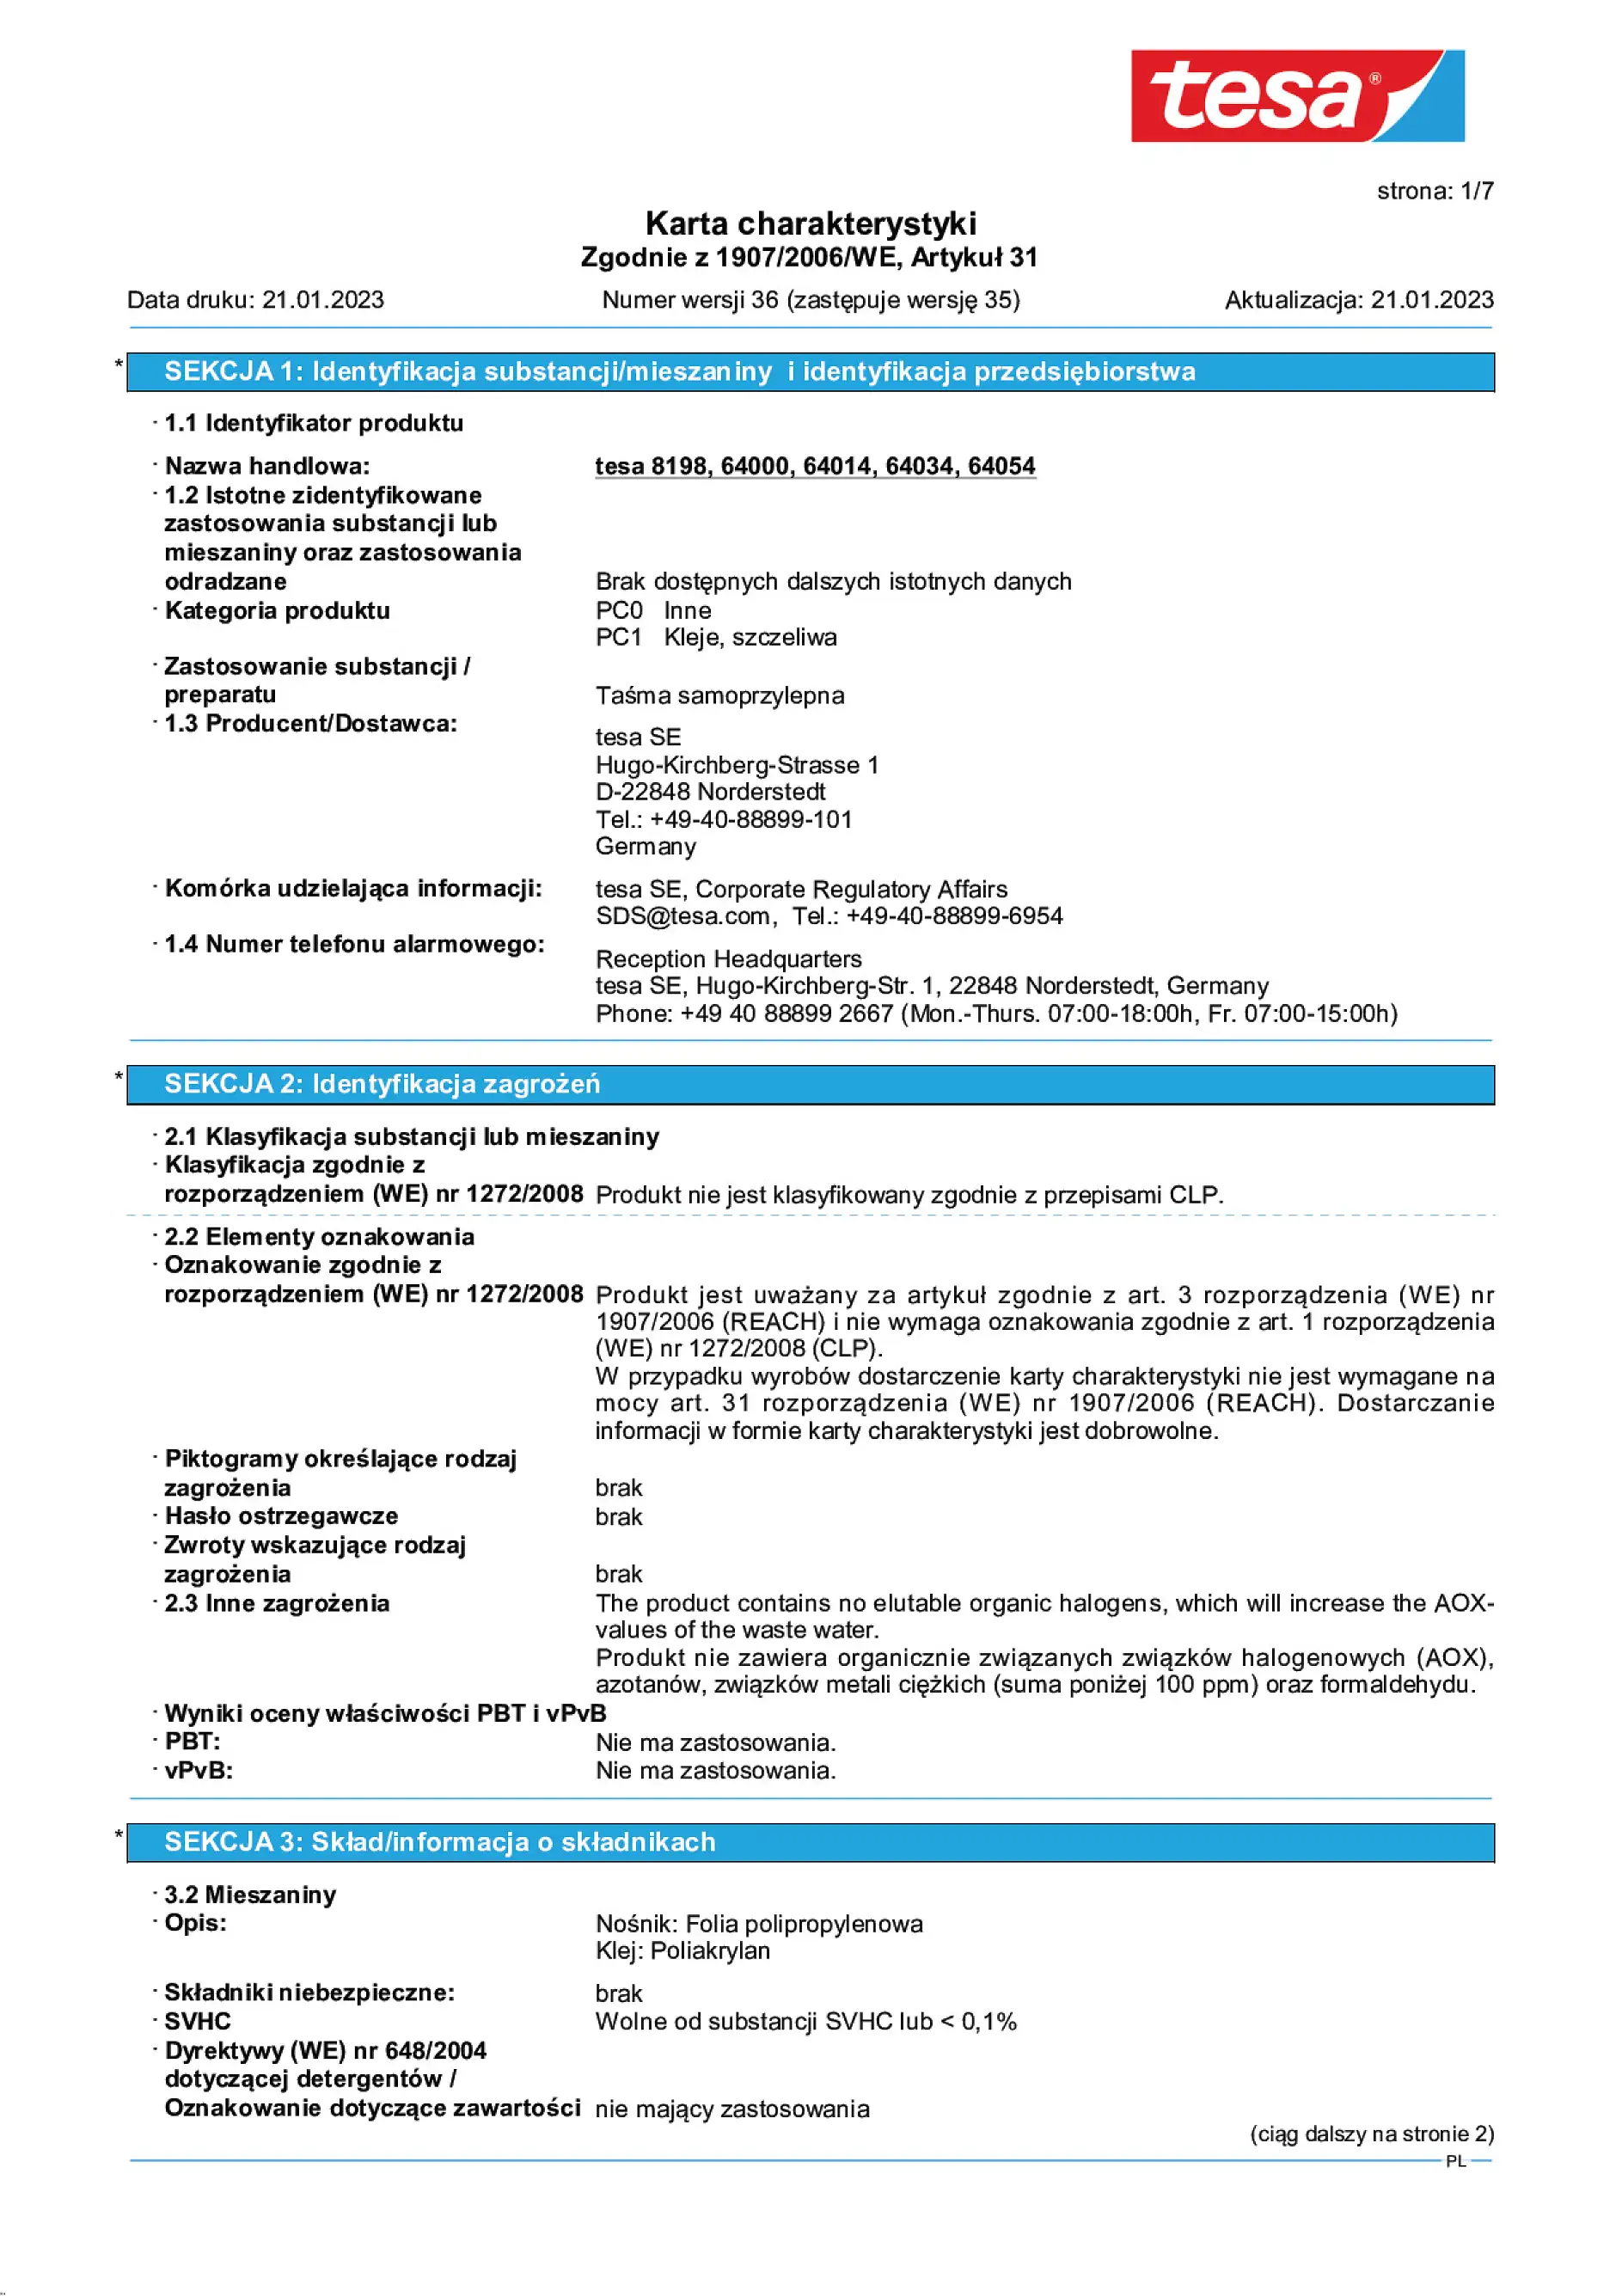 Safety data sheet_tesapack® 57424_pl-PL_v36